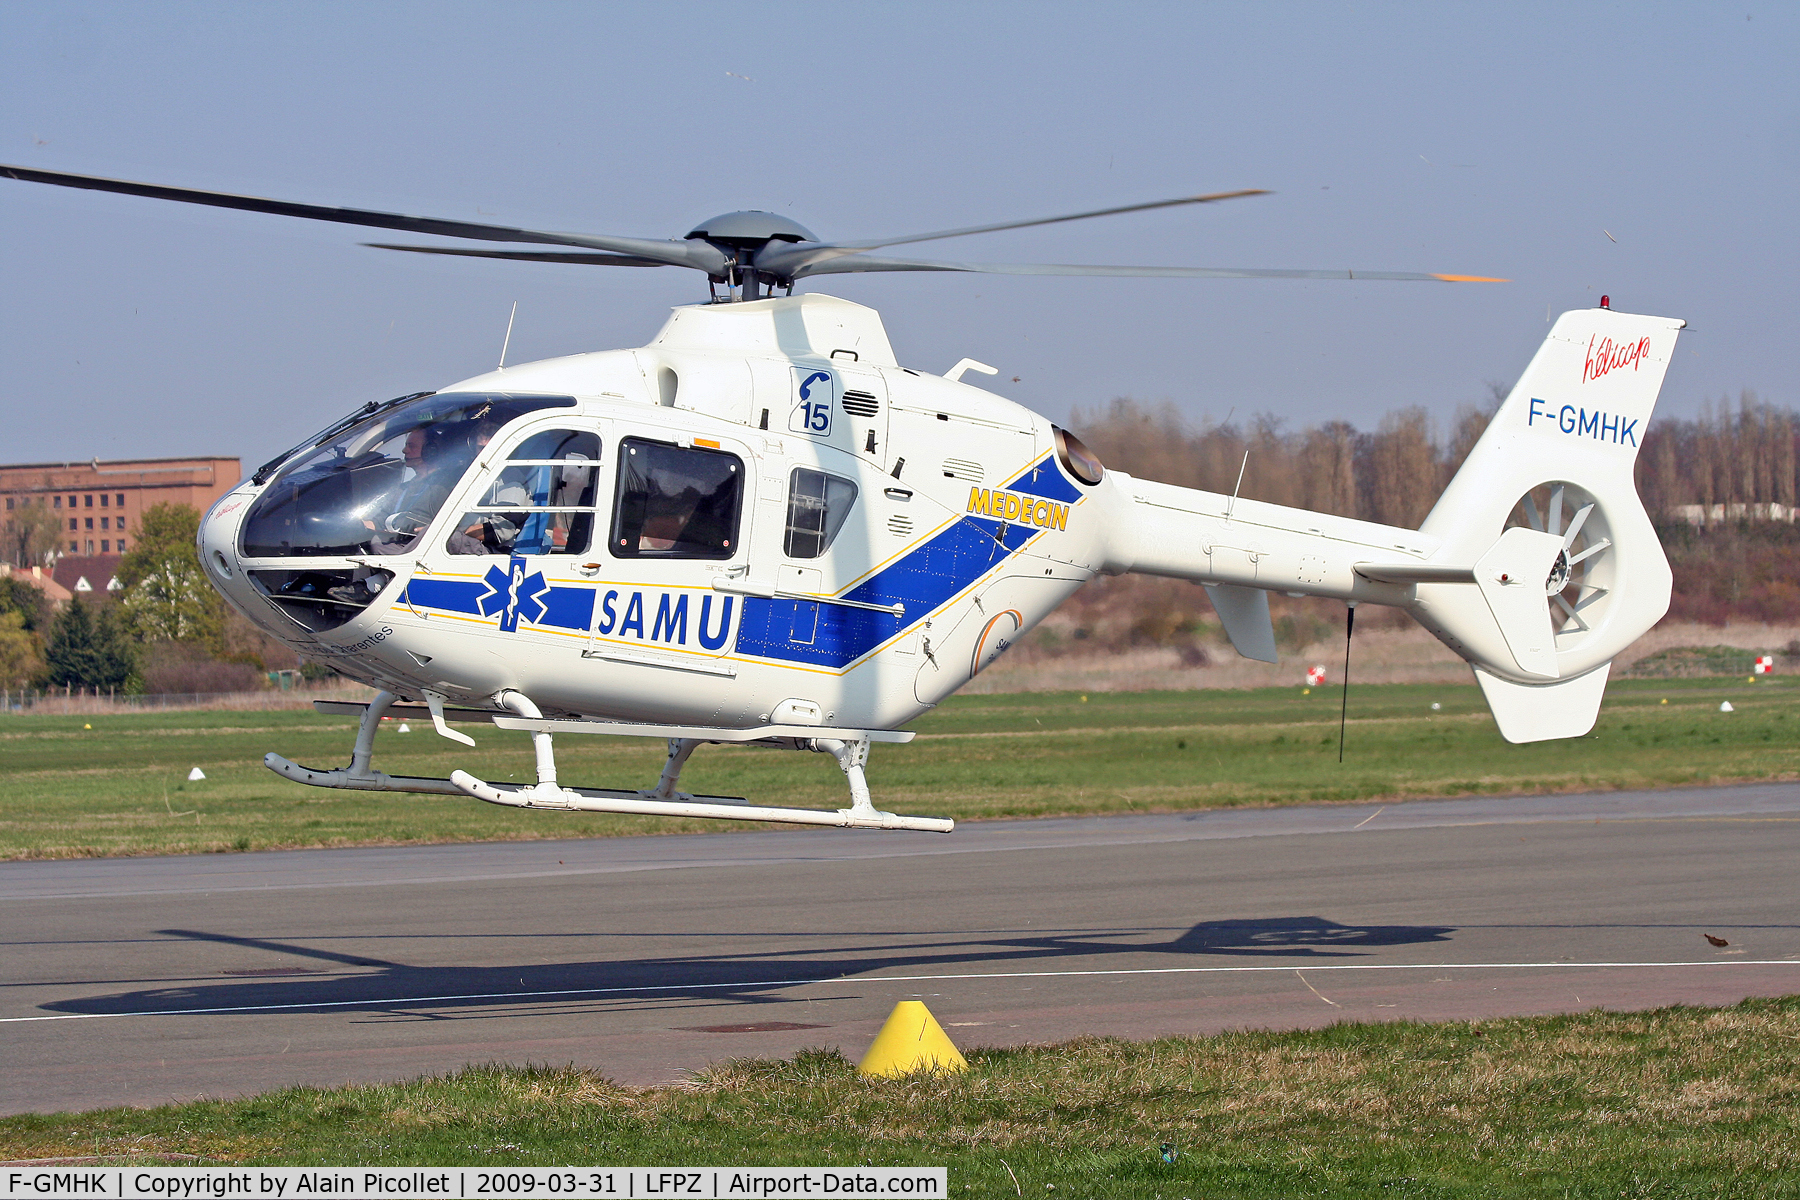 F-GMHK, Eurocopter EC-135T-1 C/N 0081, landing